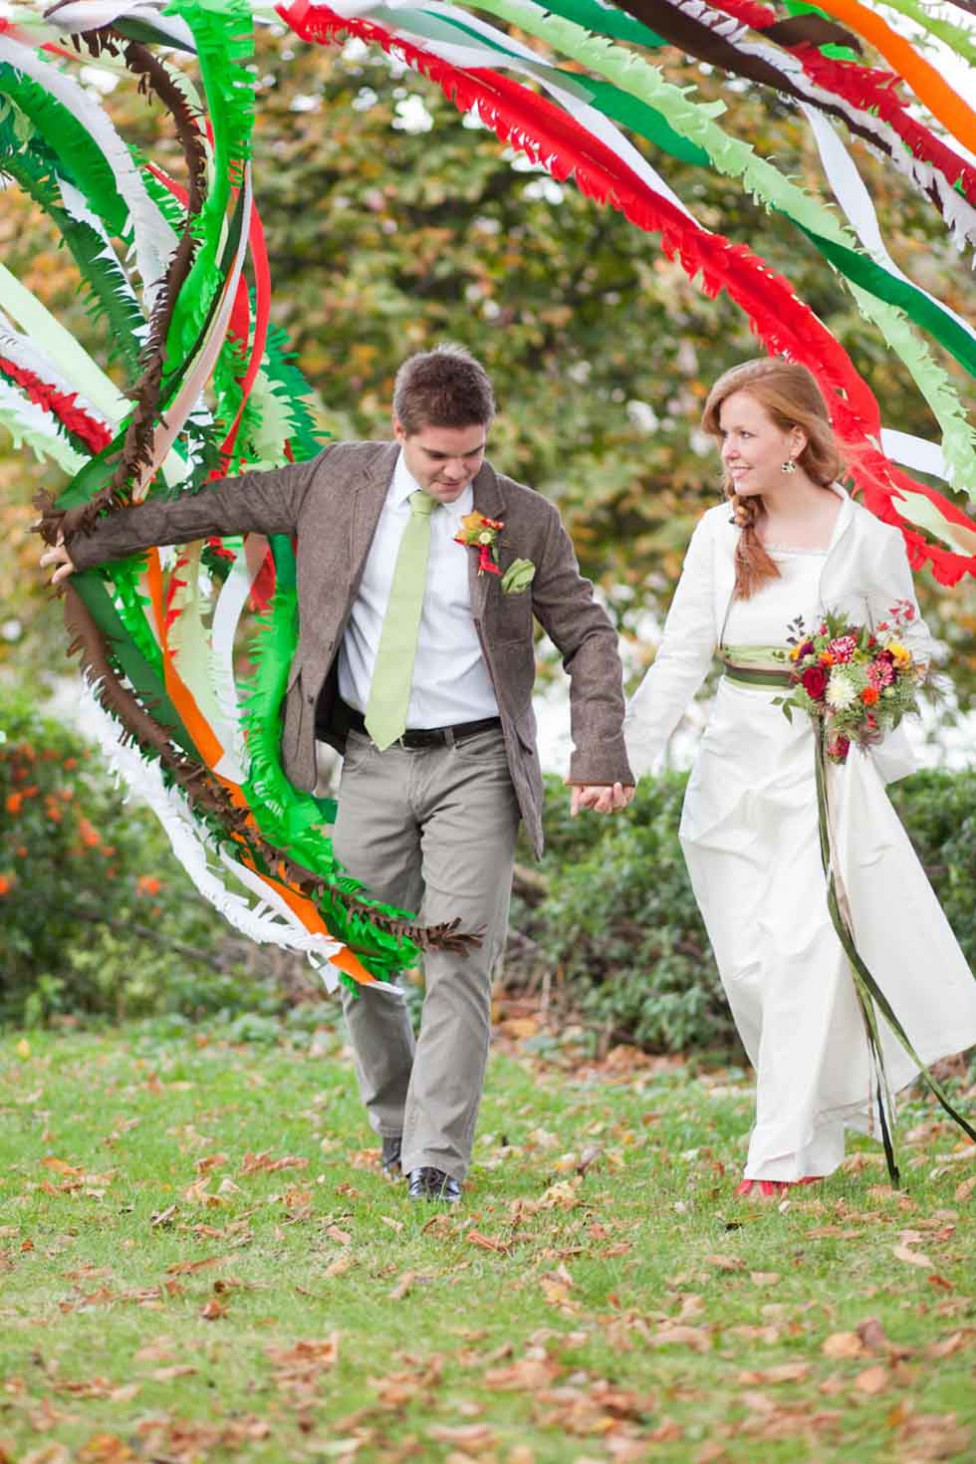 Herbstlich-Buntes Hochzeitspicknick von Fotodesign Hester